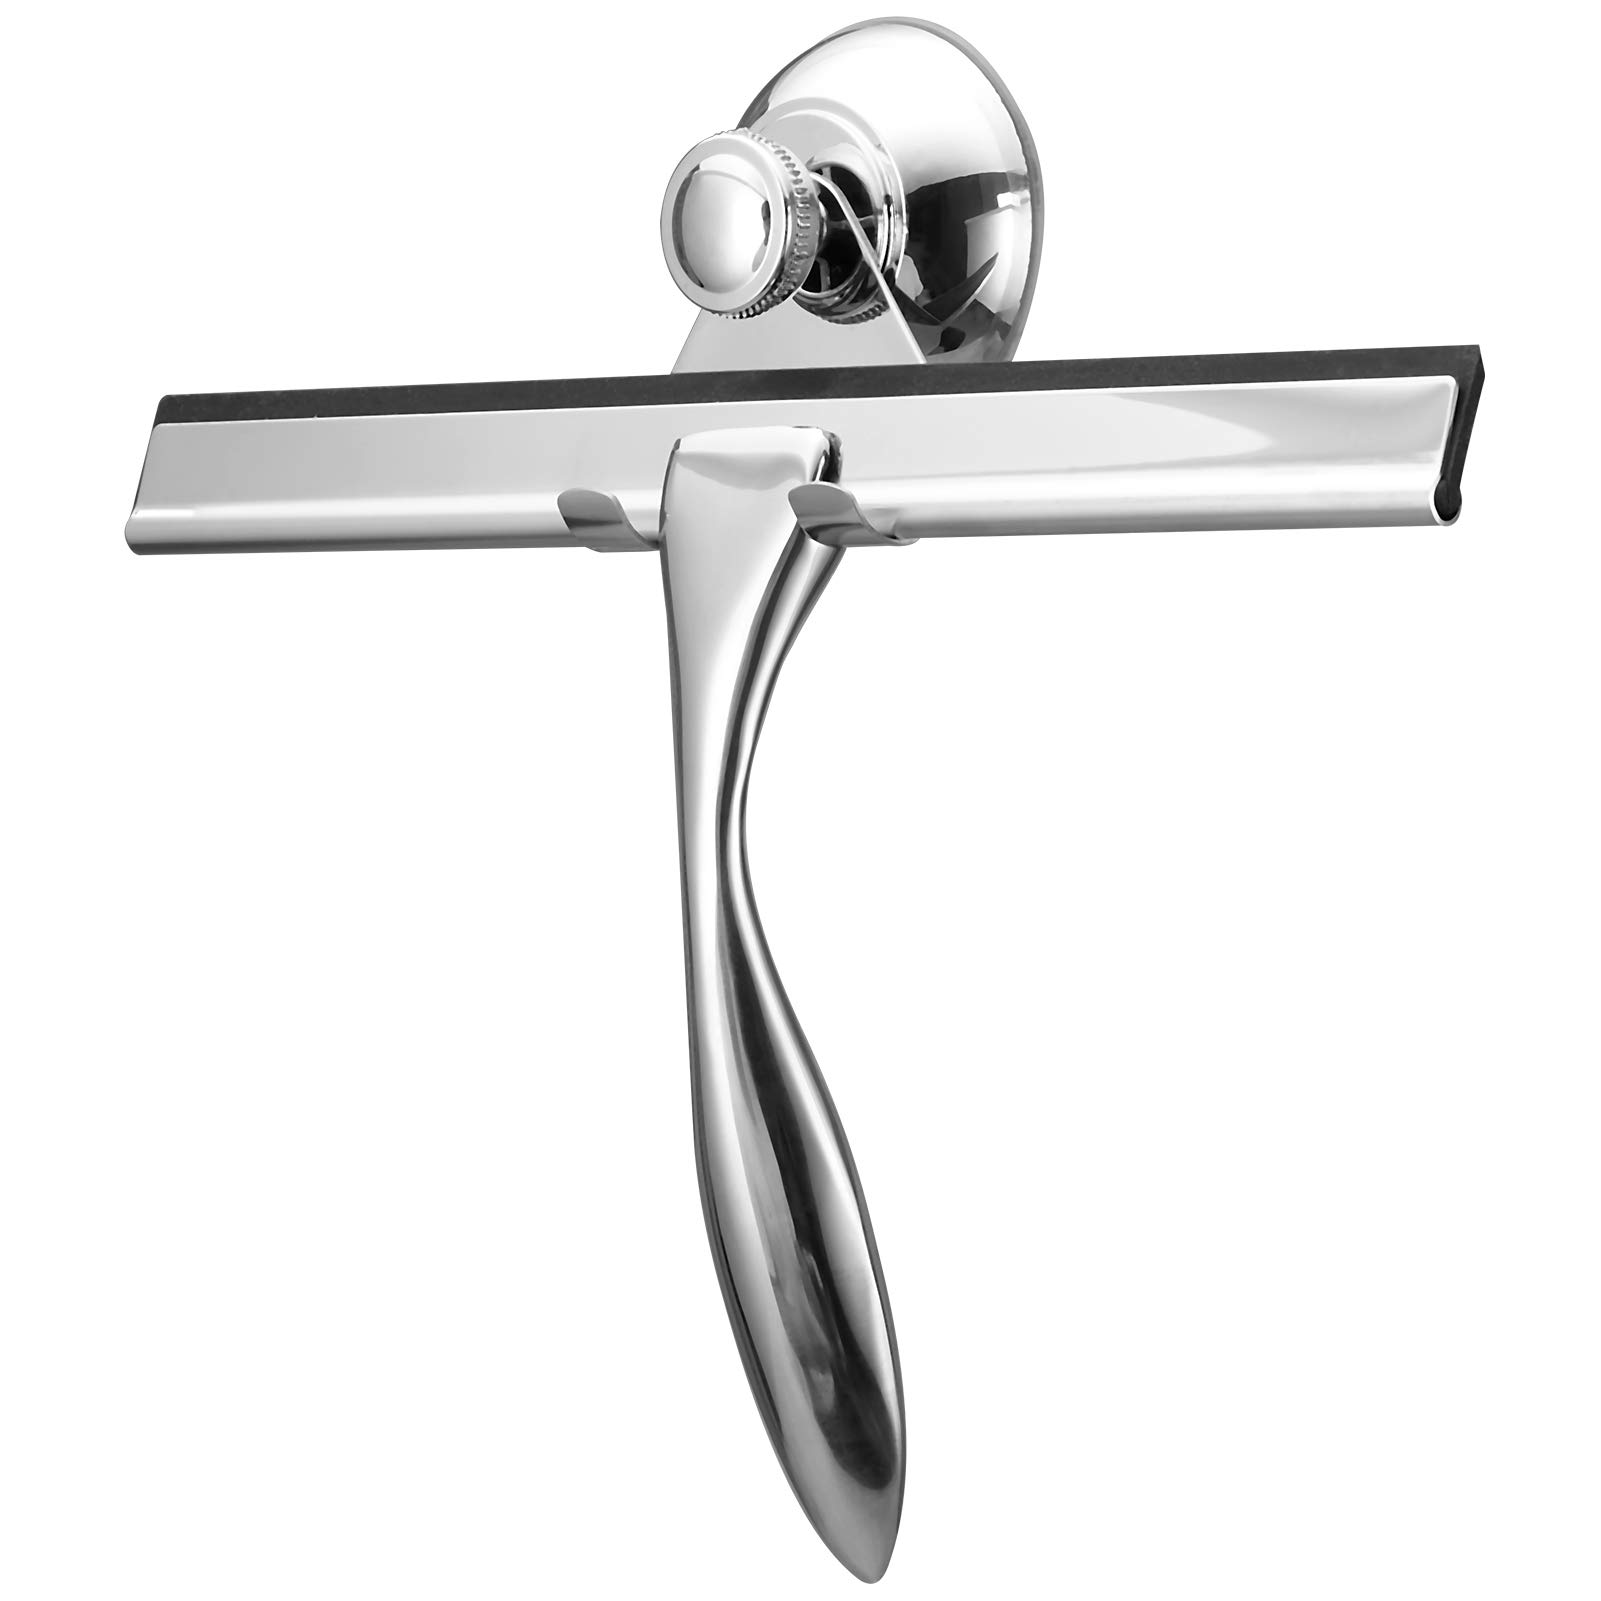 Stainless Steel Shower Hooks Glass Door Shower Hook Lightweight